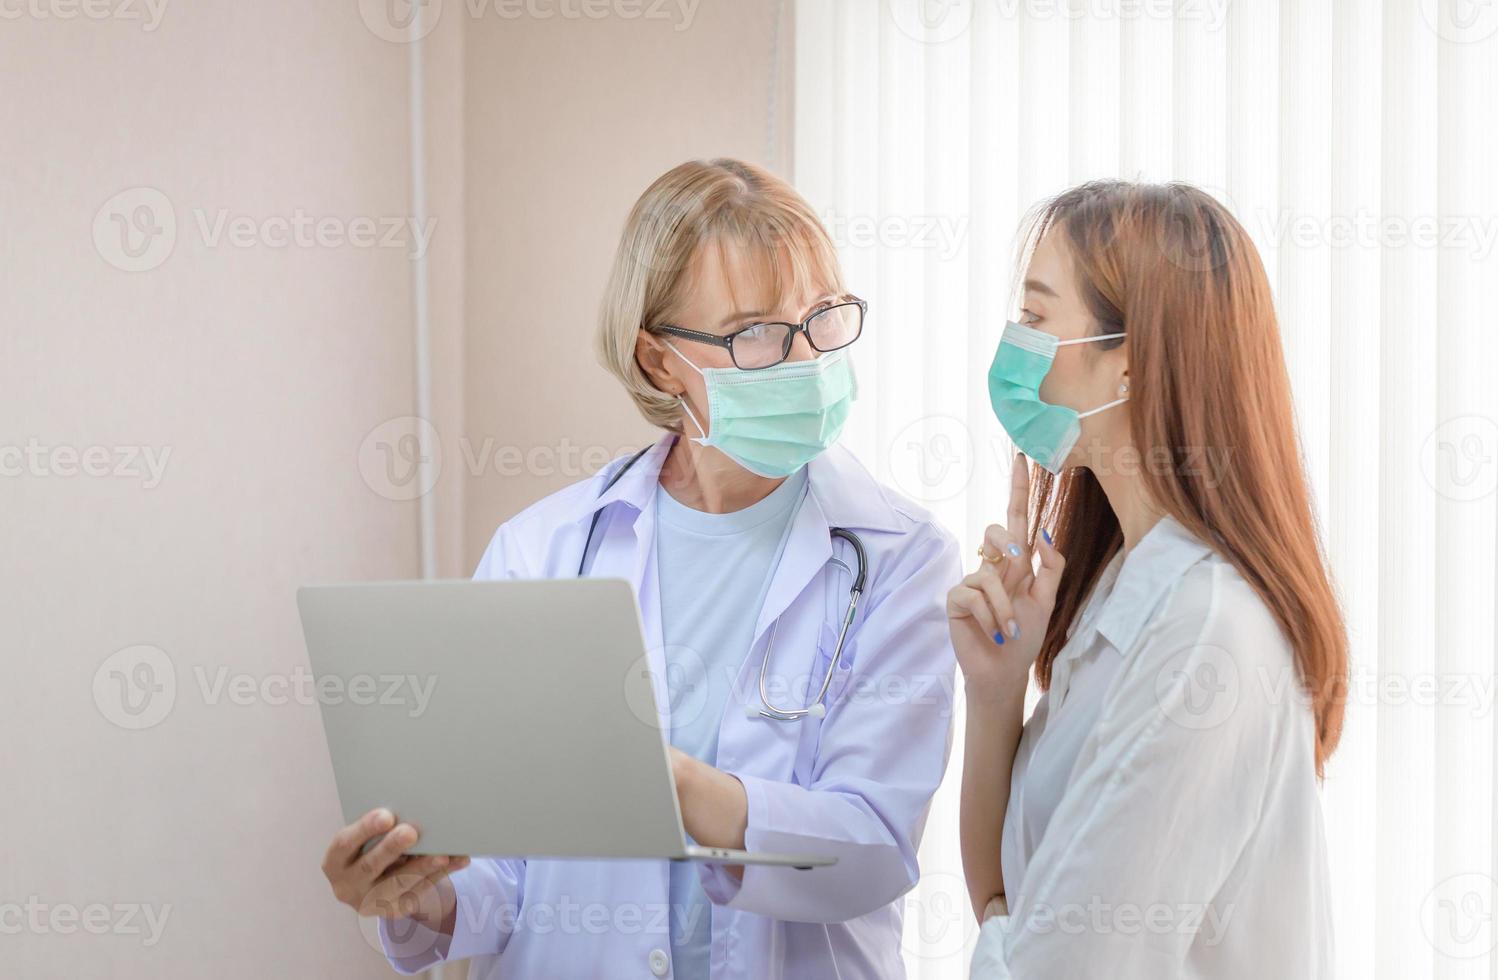 médico e paciente discutindo algo em pé em um hospital. conceitos de medicina e cuidados de saúde foto